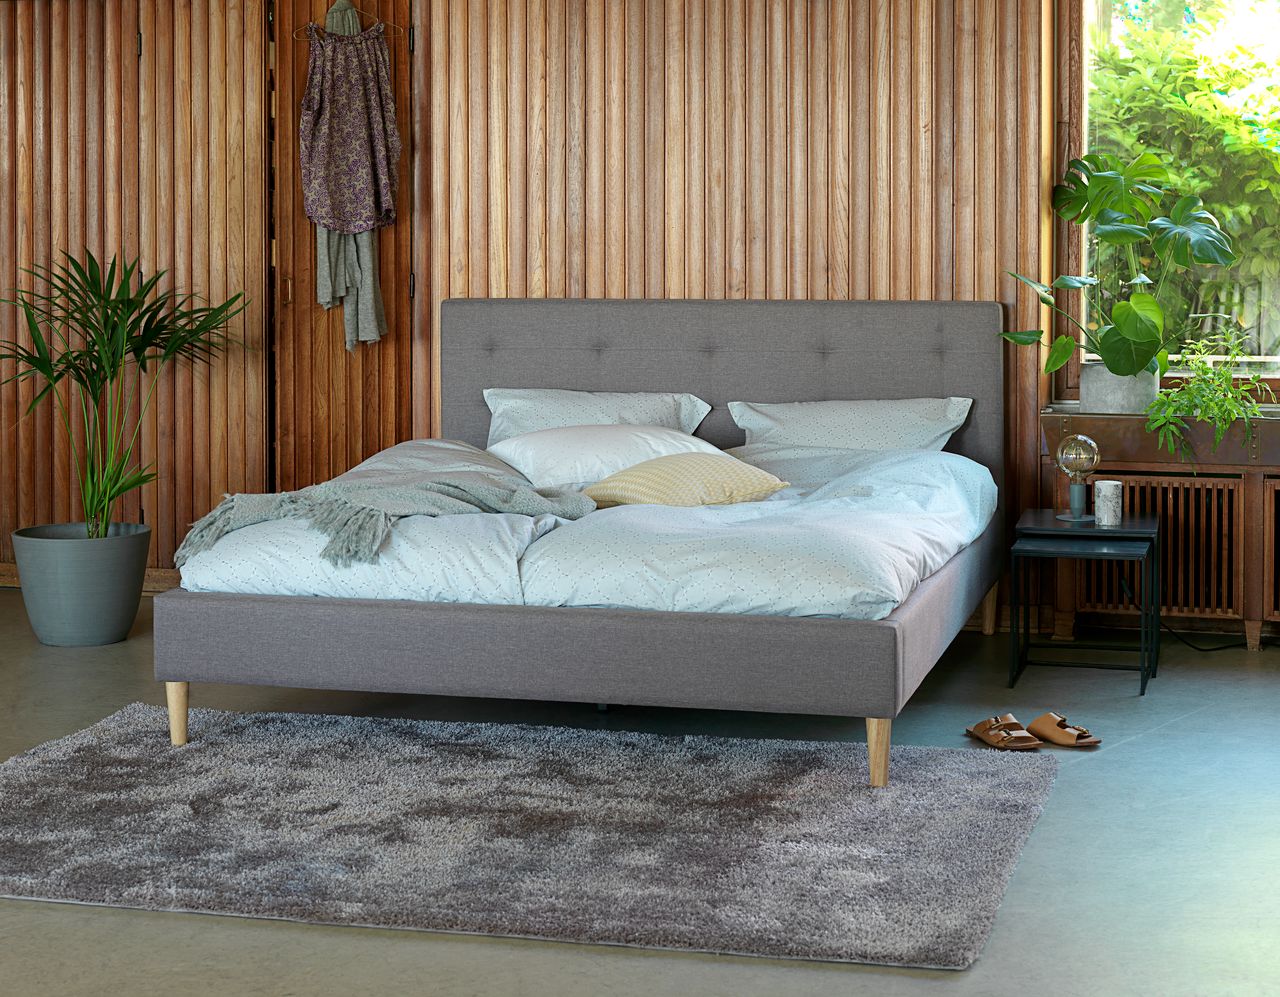 Mẫu thiết kế phòng ngủ đơn giản 15m2 sử dụng chất liệu gỗ và cây xanh gần gũi với thiên nhiên